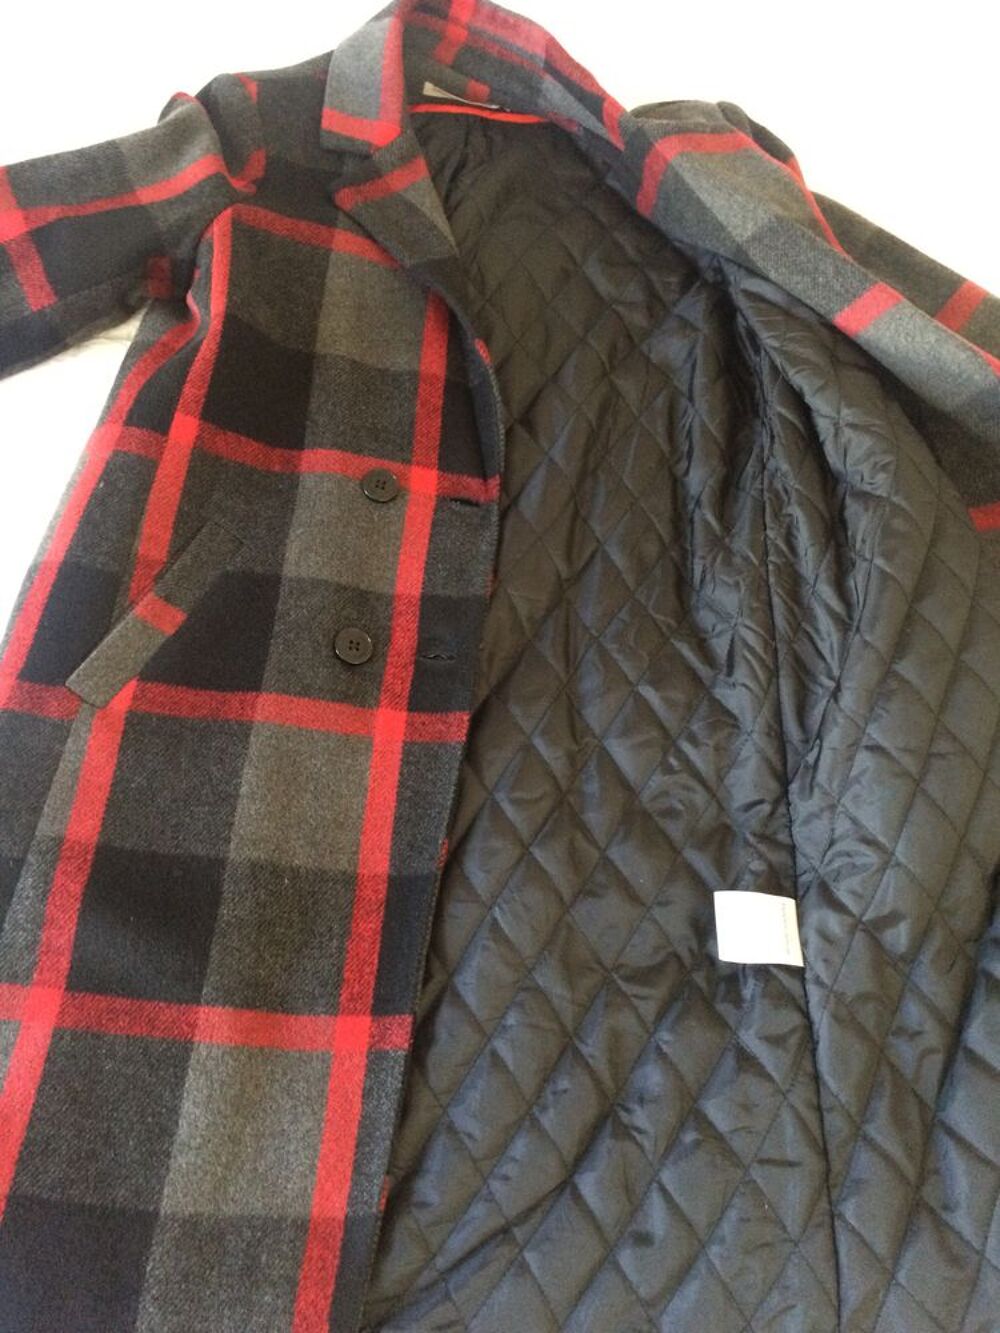 Manteau long carreaux rouge, gris ,noir taille 38 Vtements